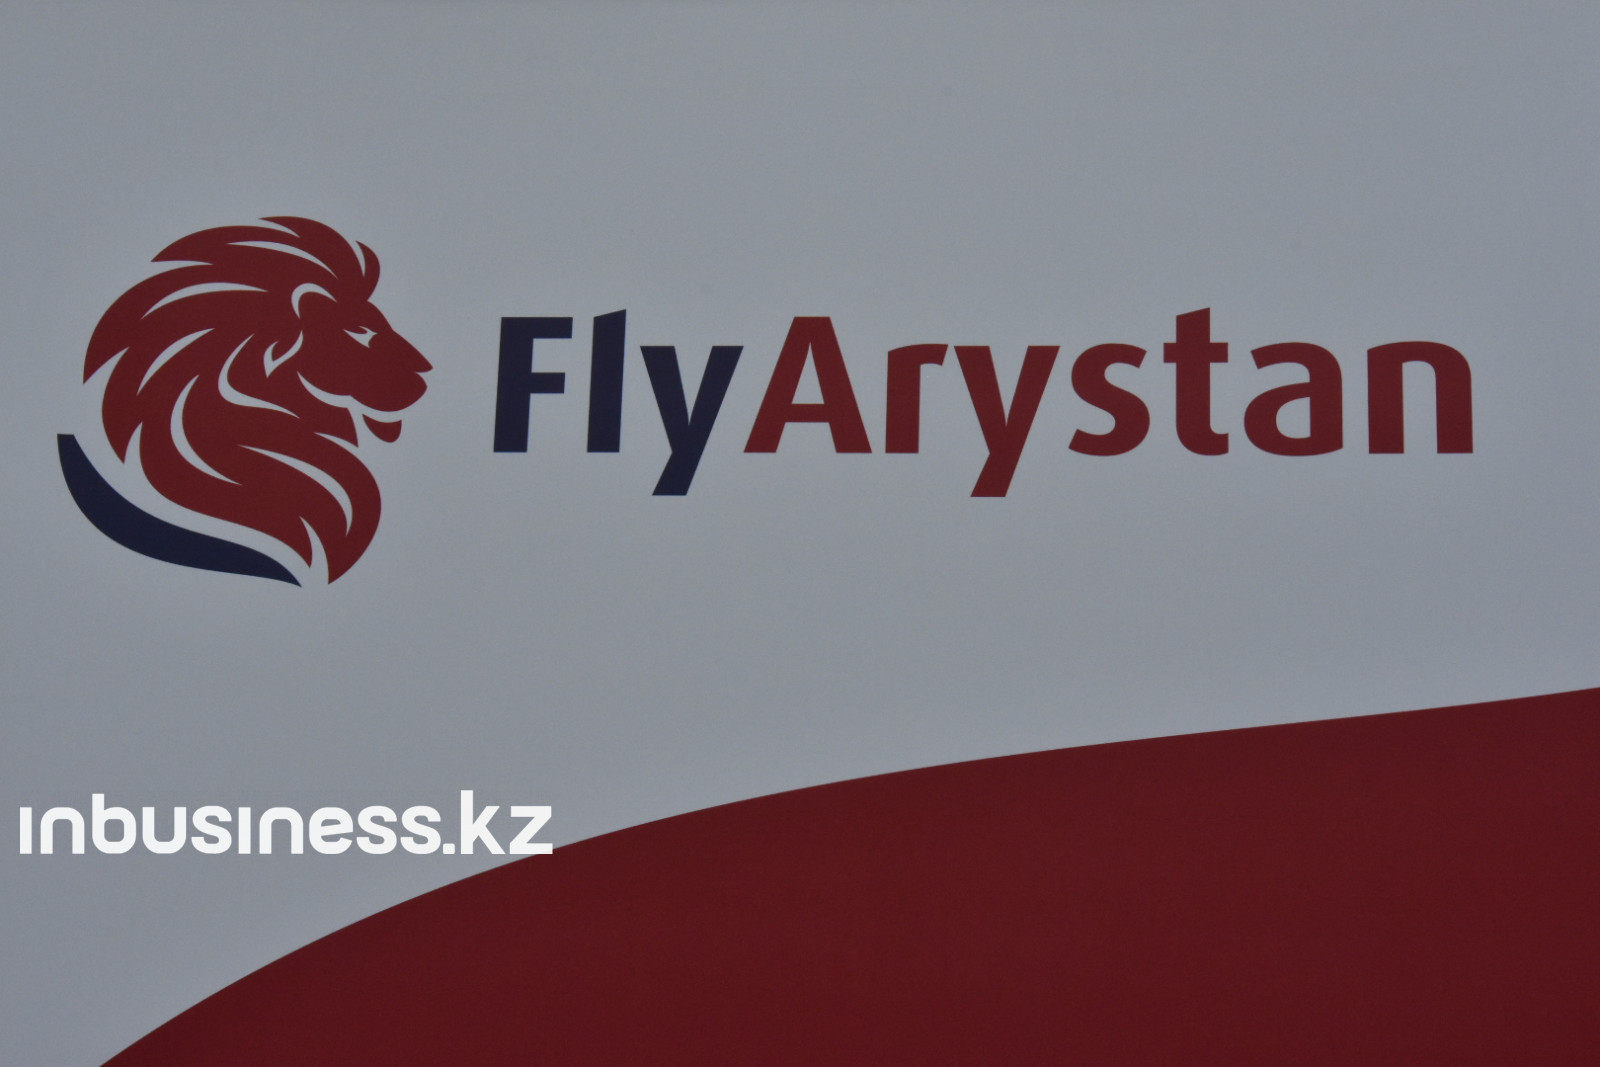  Fly Arystan халықаралық рейстерді қазан айында бастамақ